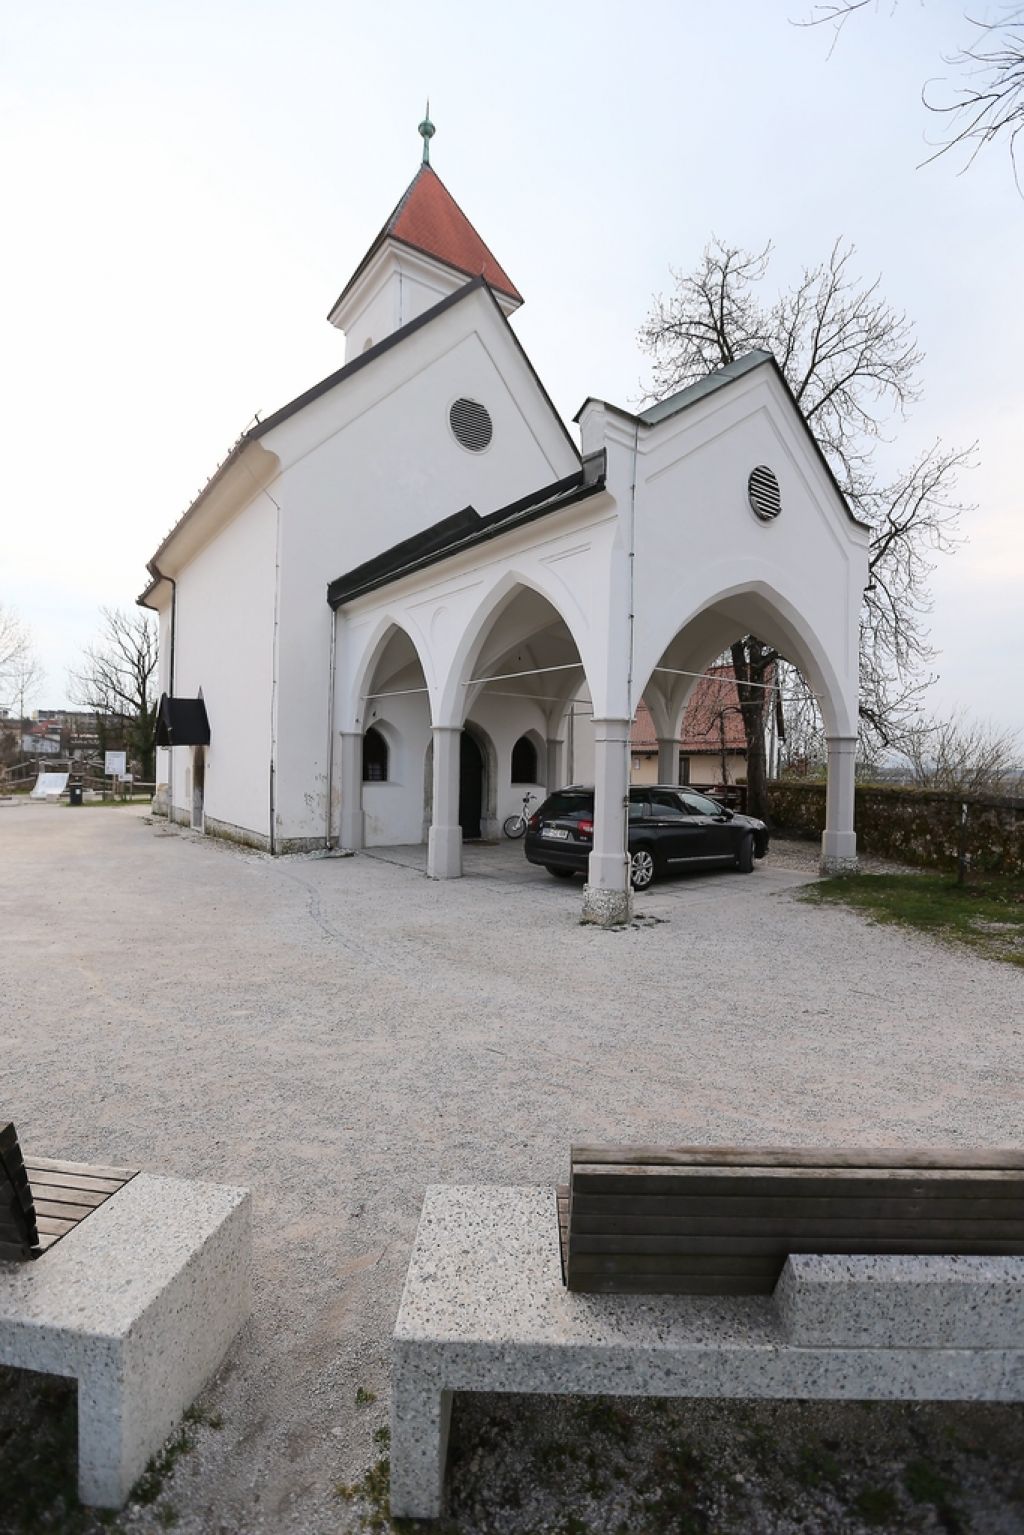 Pravoslavni verniki v Kranju bi radi imeli svojo cerkev